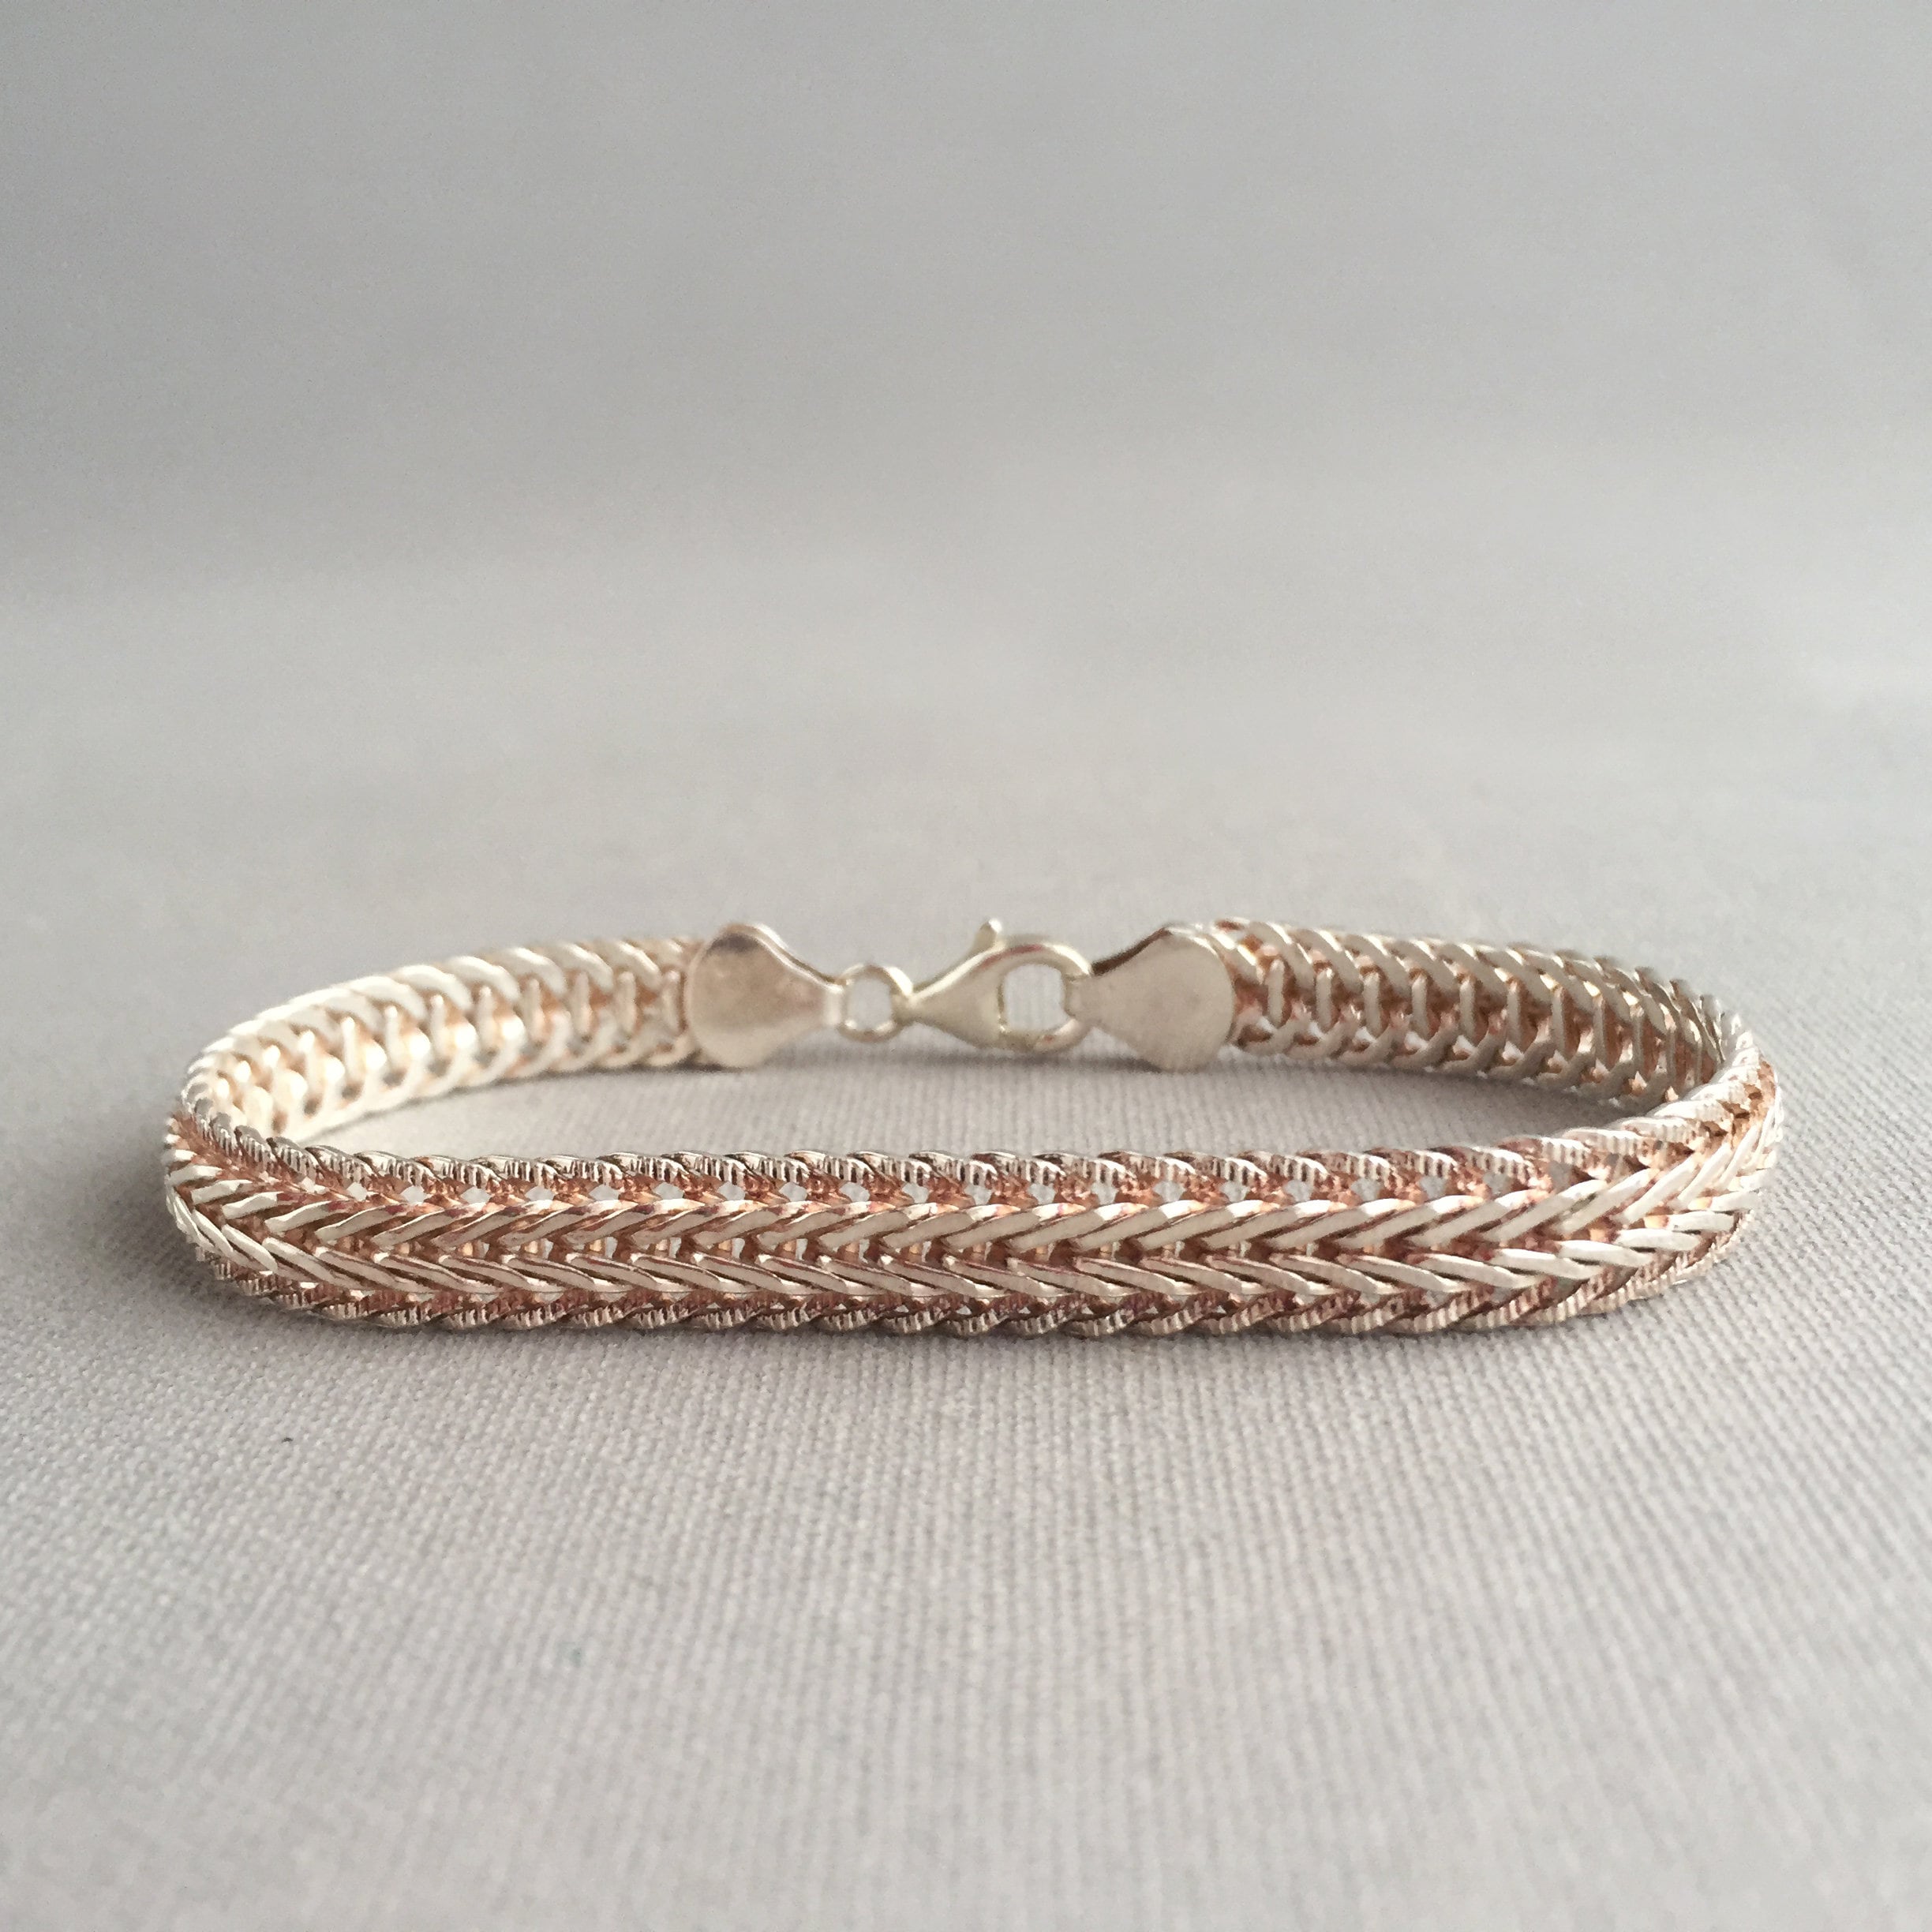 silver (925) chunky woven bracelet